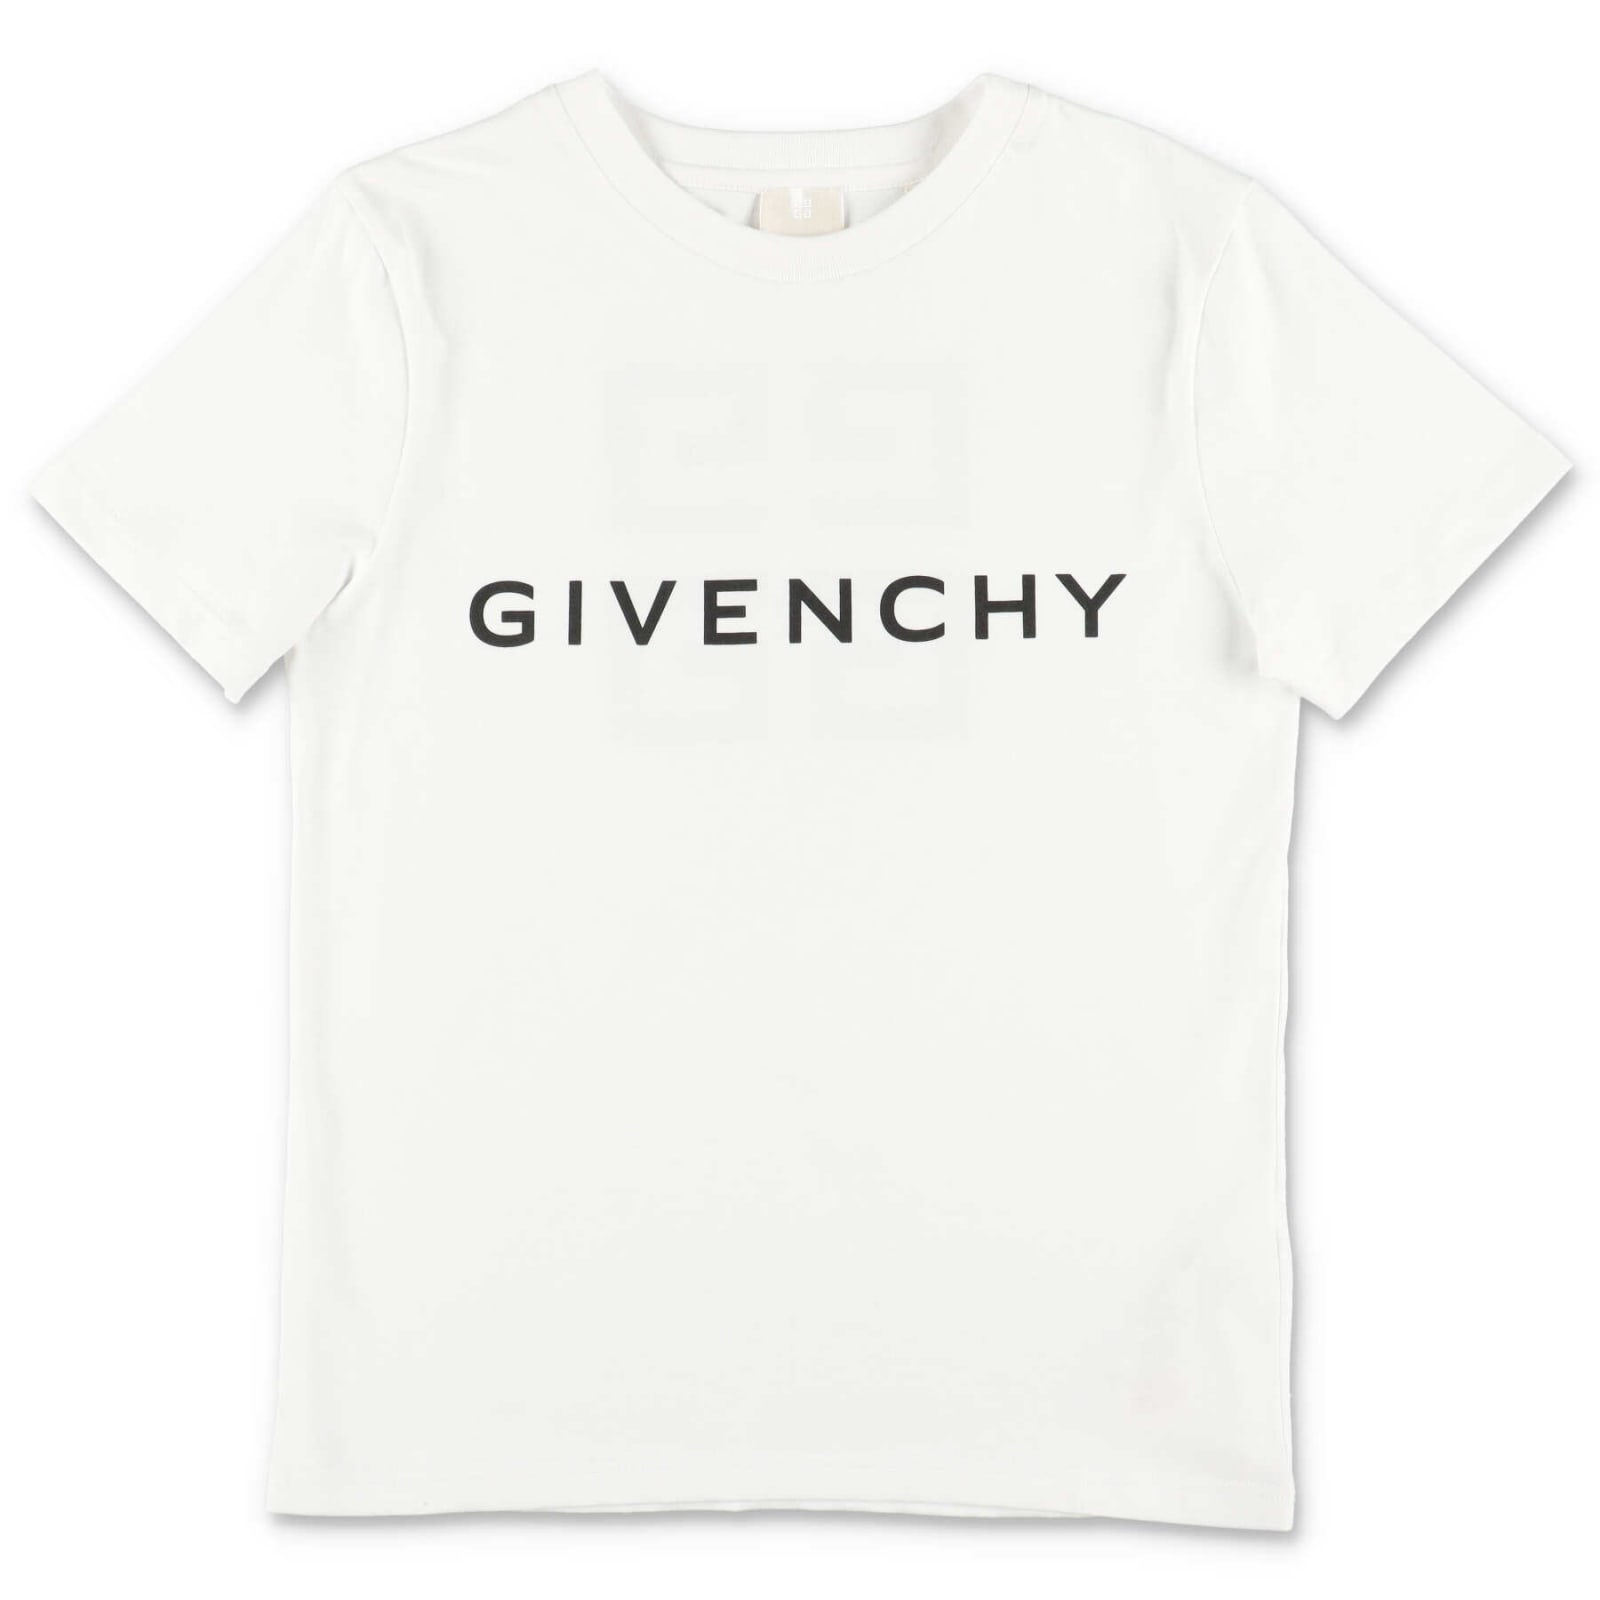 Givenchy T-shirt Bianca In Jersey Di Cotone Bambino